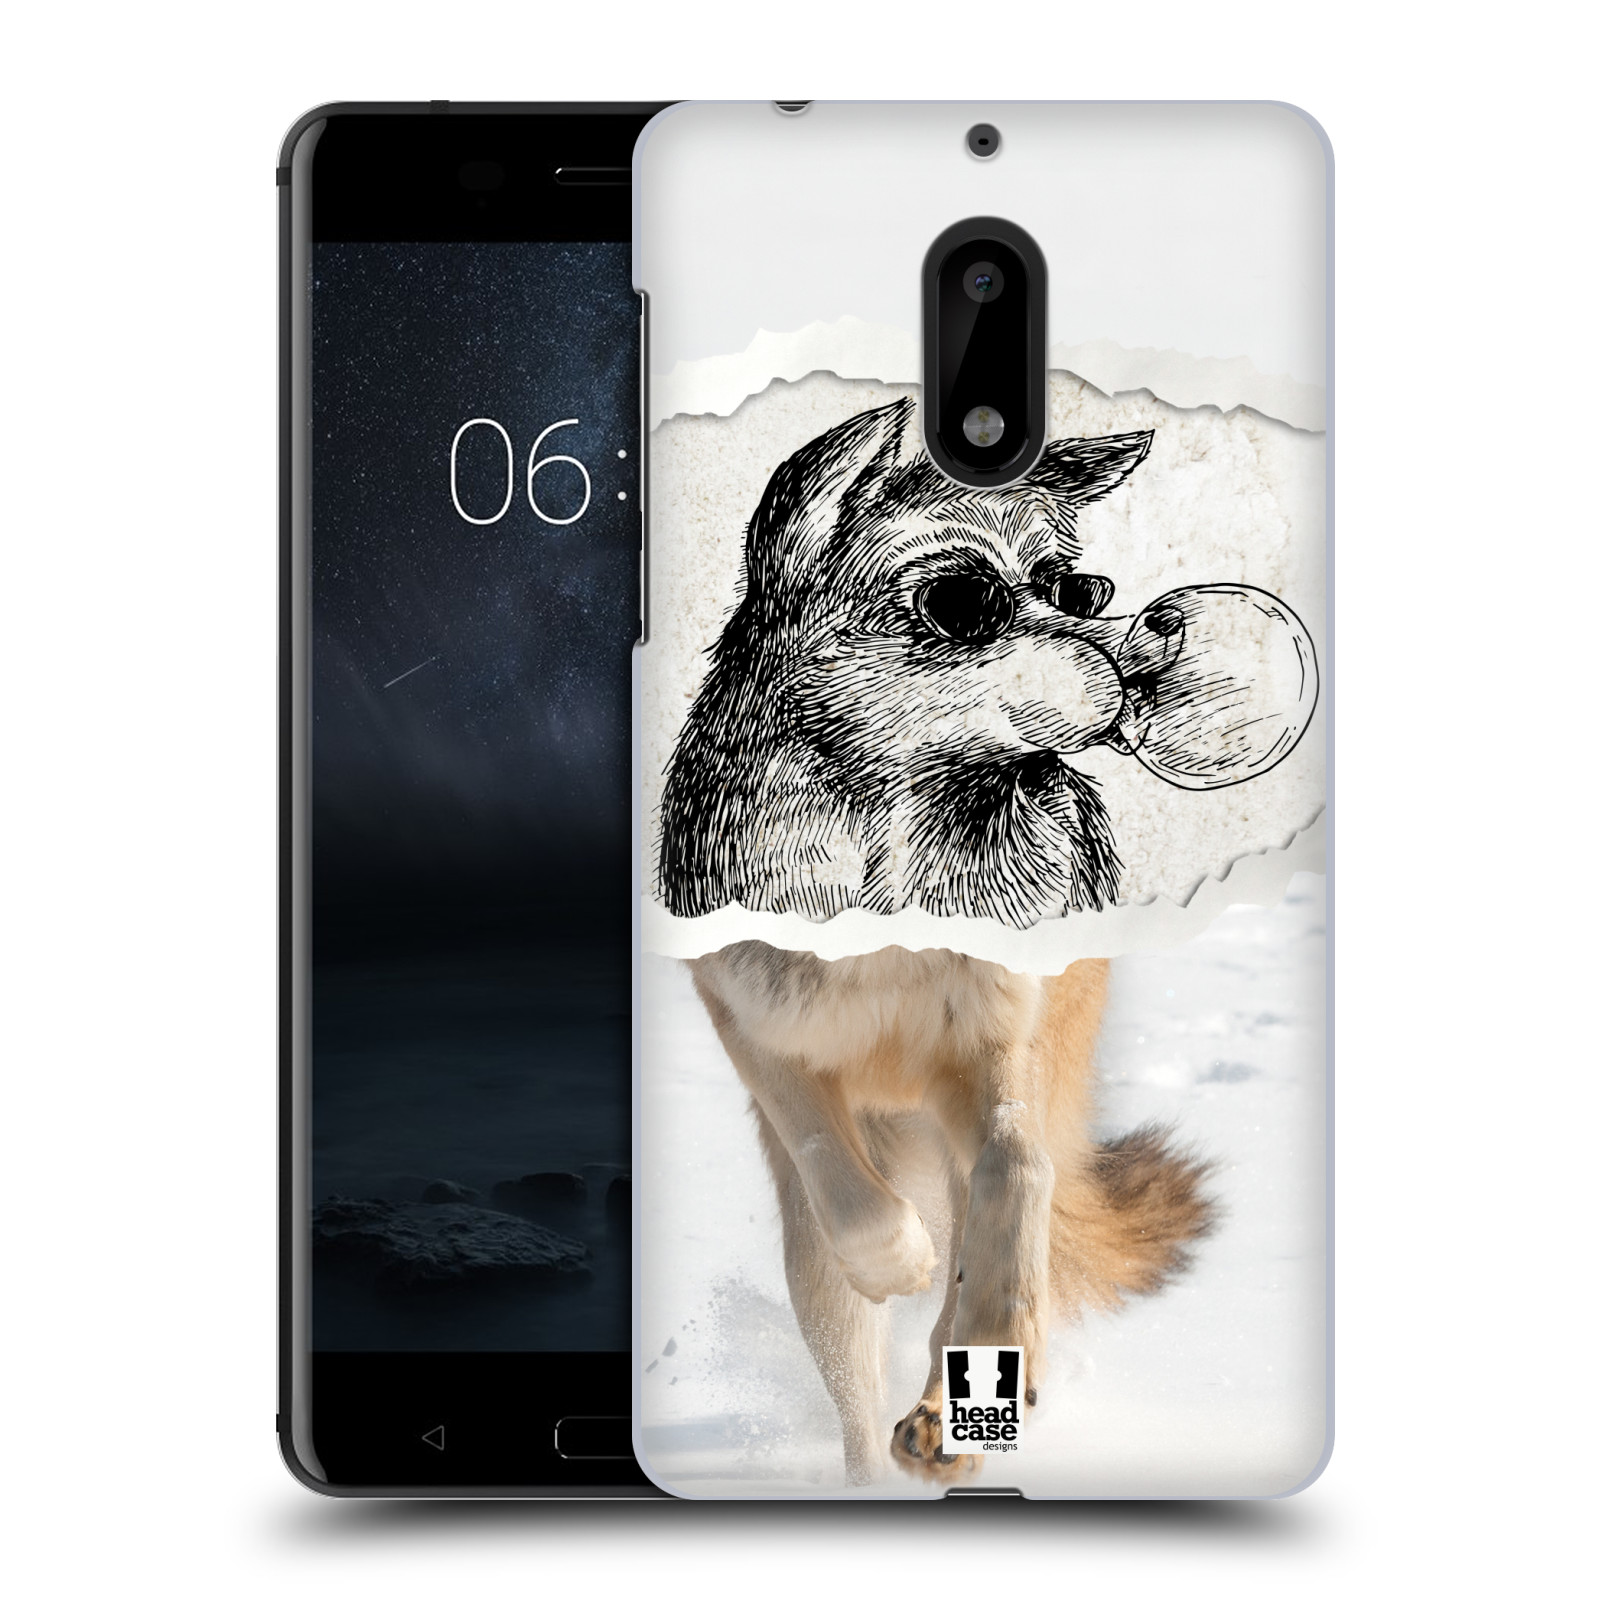 HEAD CASE plastový obal na mobil Nokia 6 vzor zvířata koláž vlk pohodář